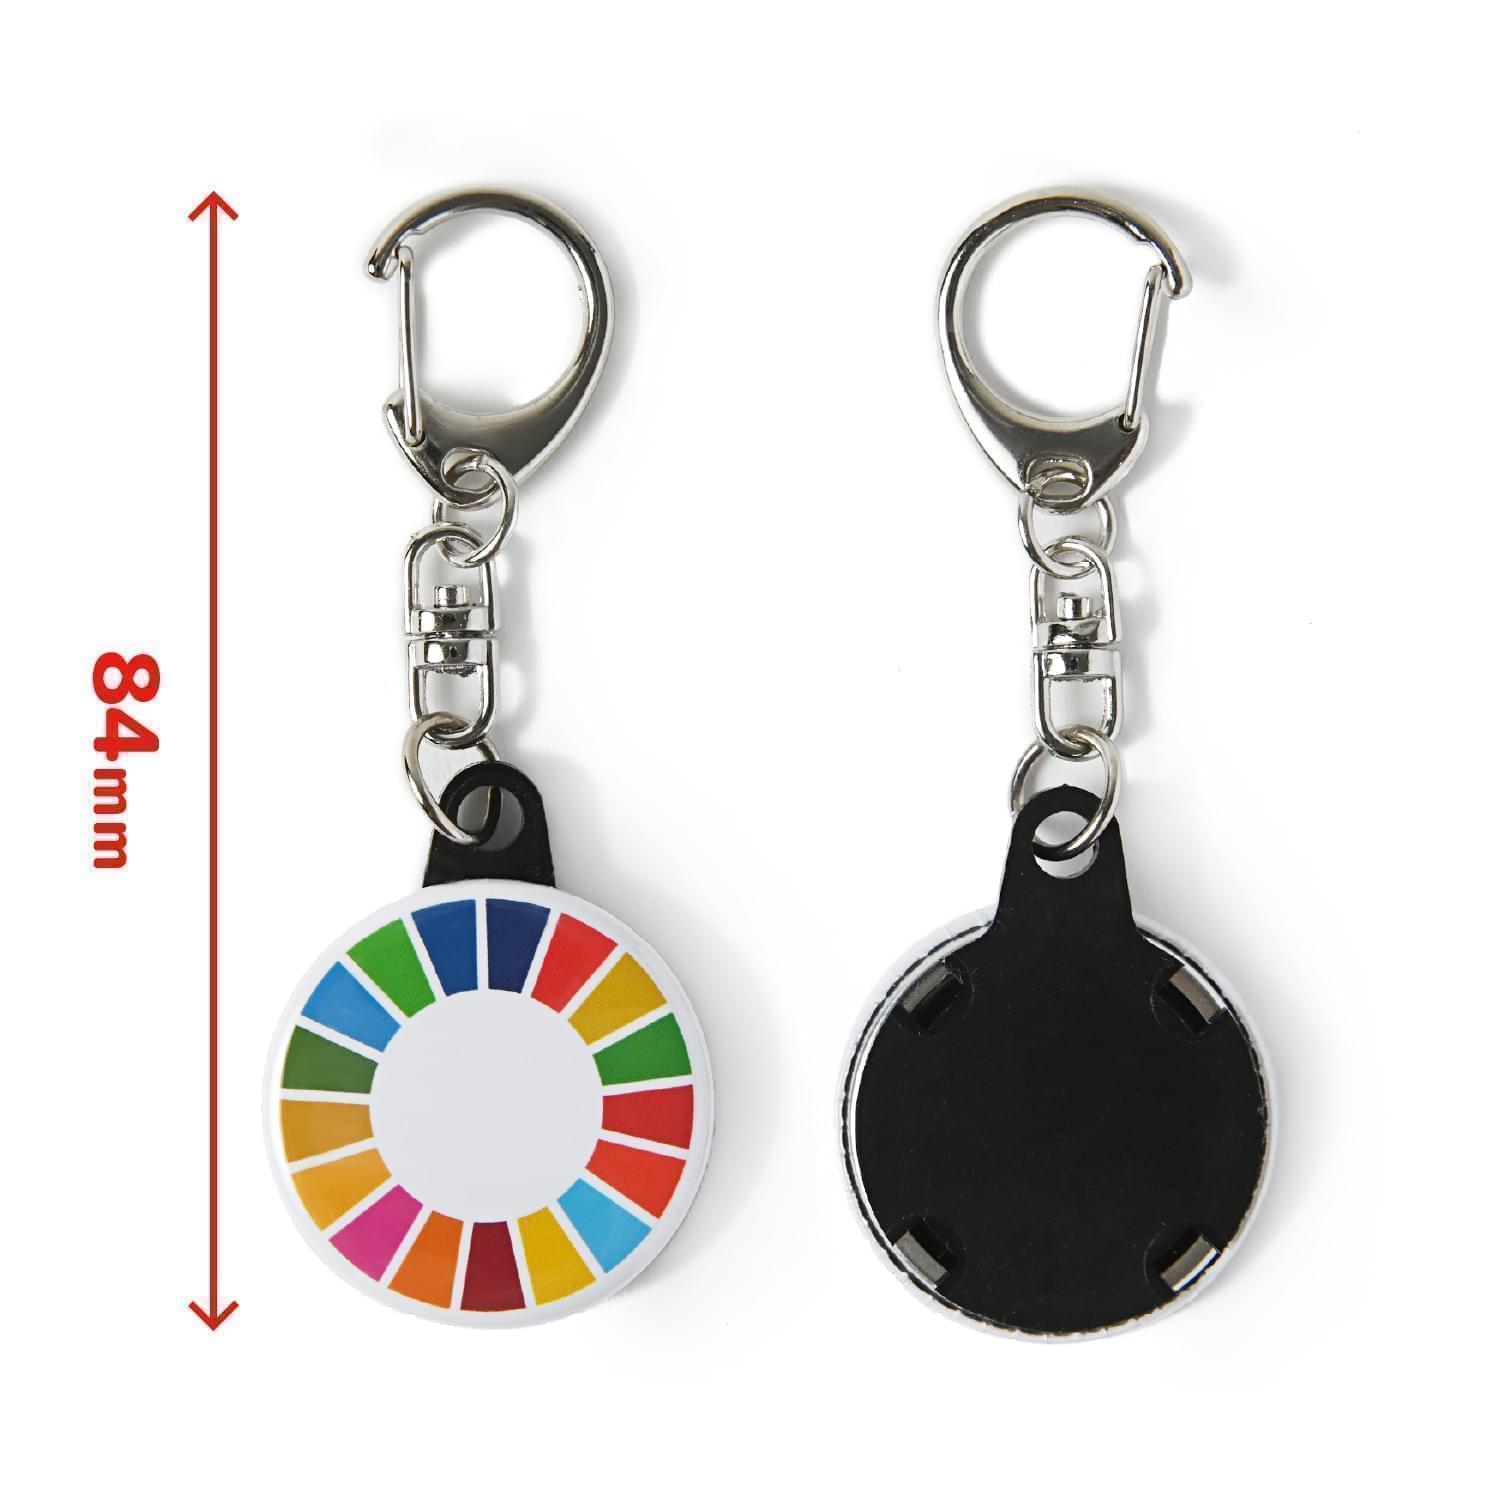 一番の贈り物 SDGs 17の目標 20個 キーホルダー バッジ - キーホルダー - cronoslab.org